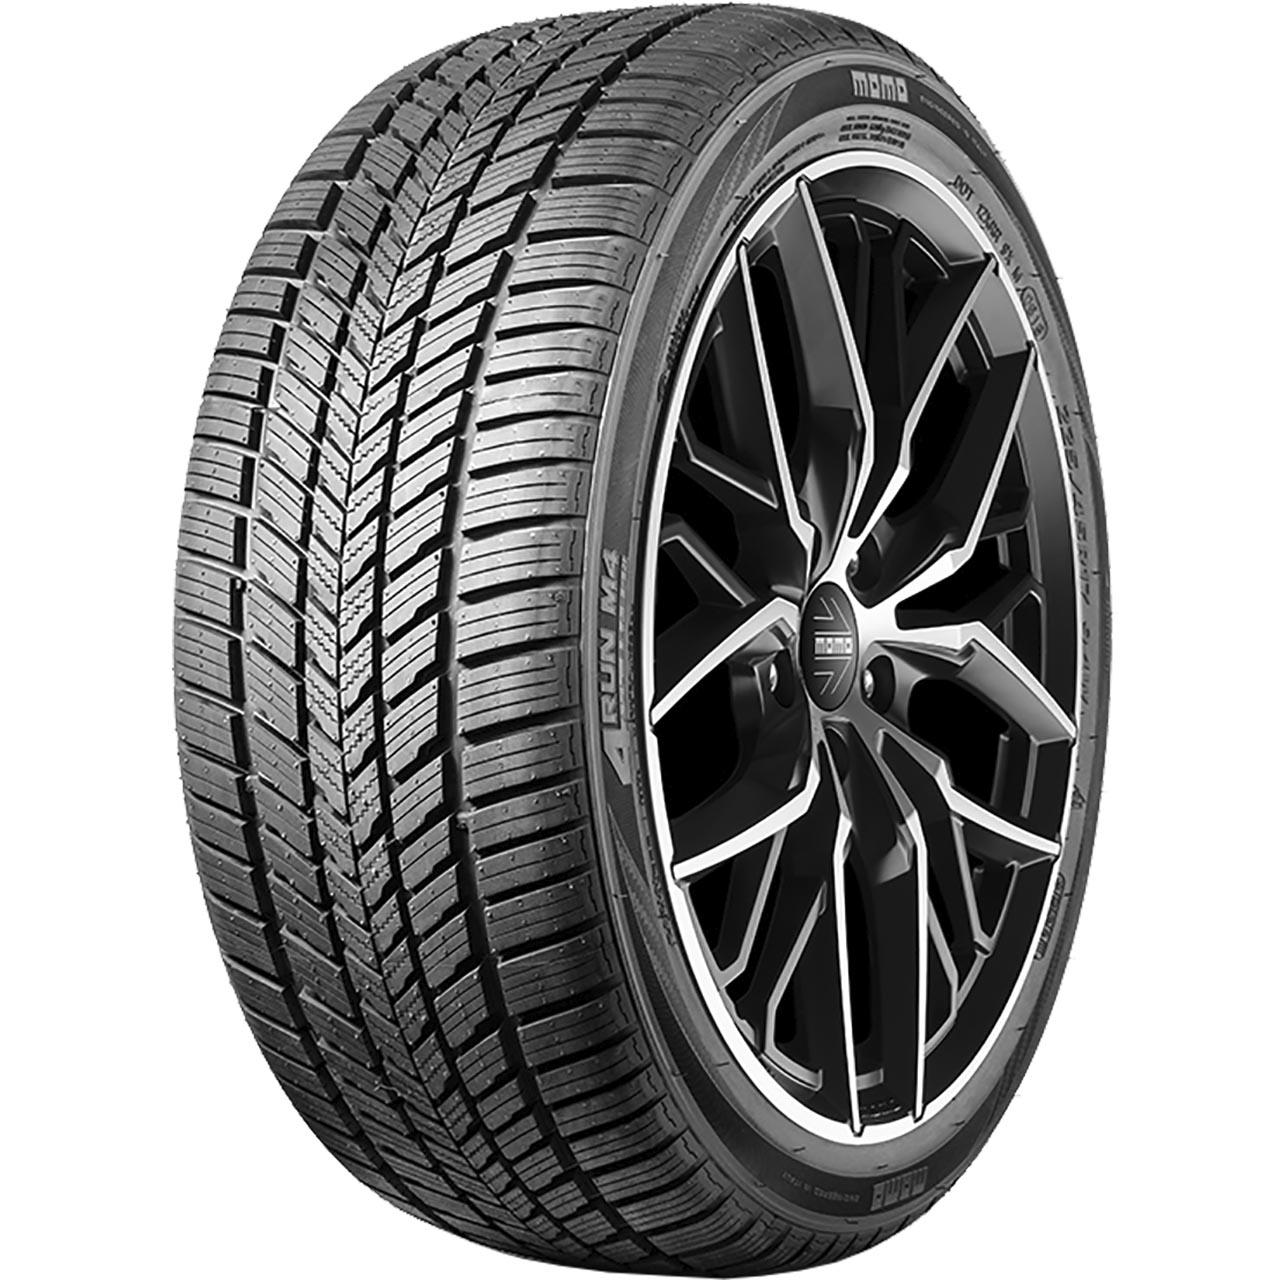 Momo Tire M 4 Four Season 195/60R15 88V